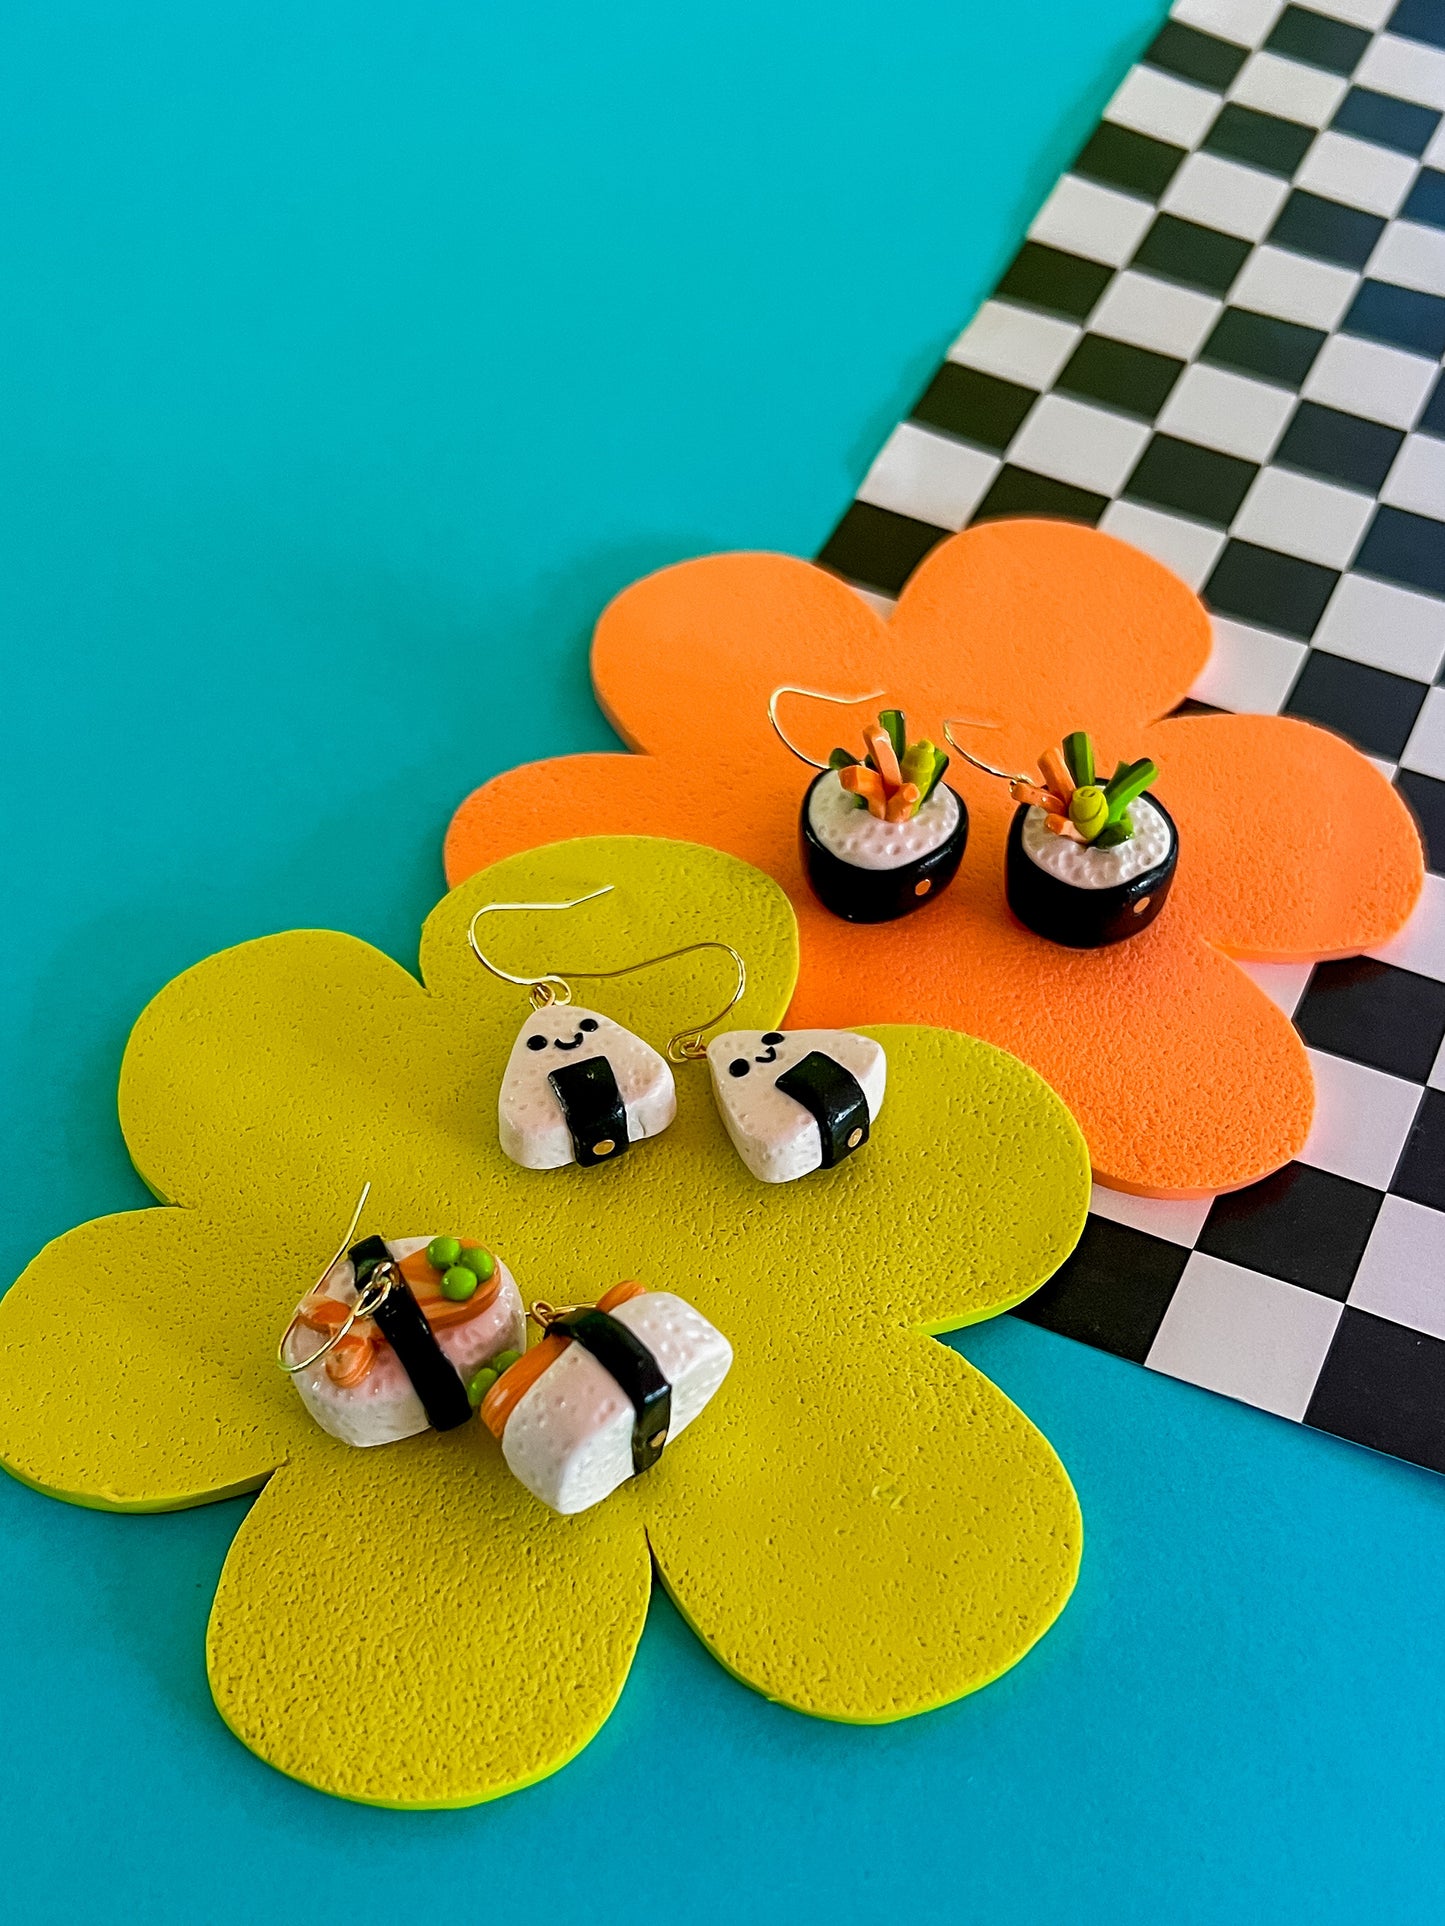 Kiko Sushi Earrings - Clay Sushi Earrings